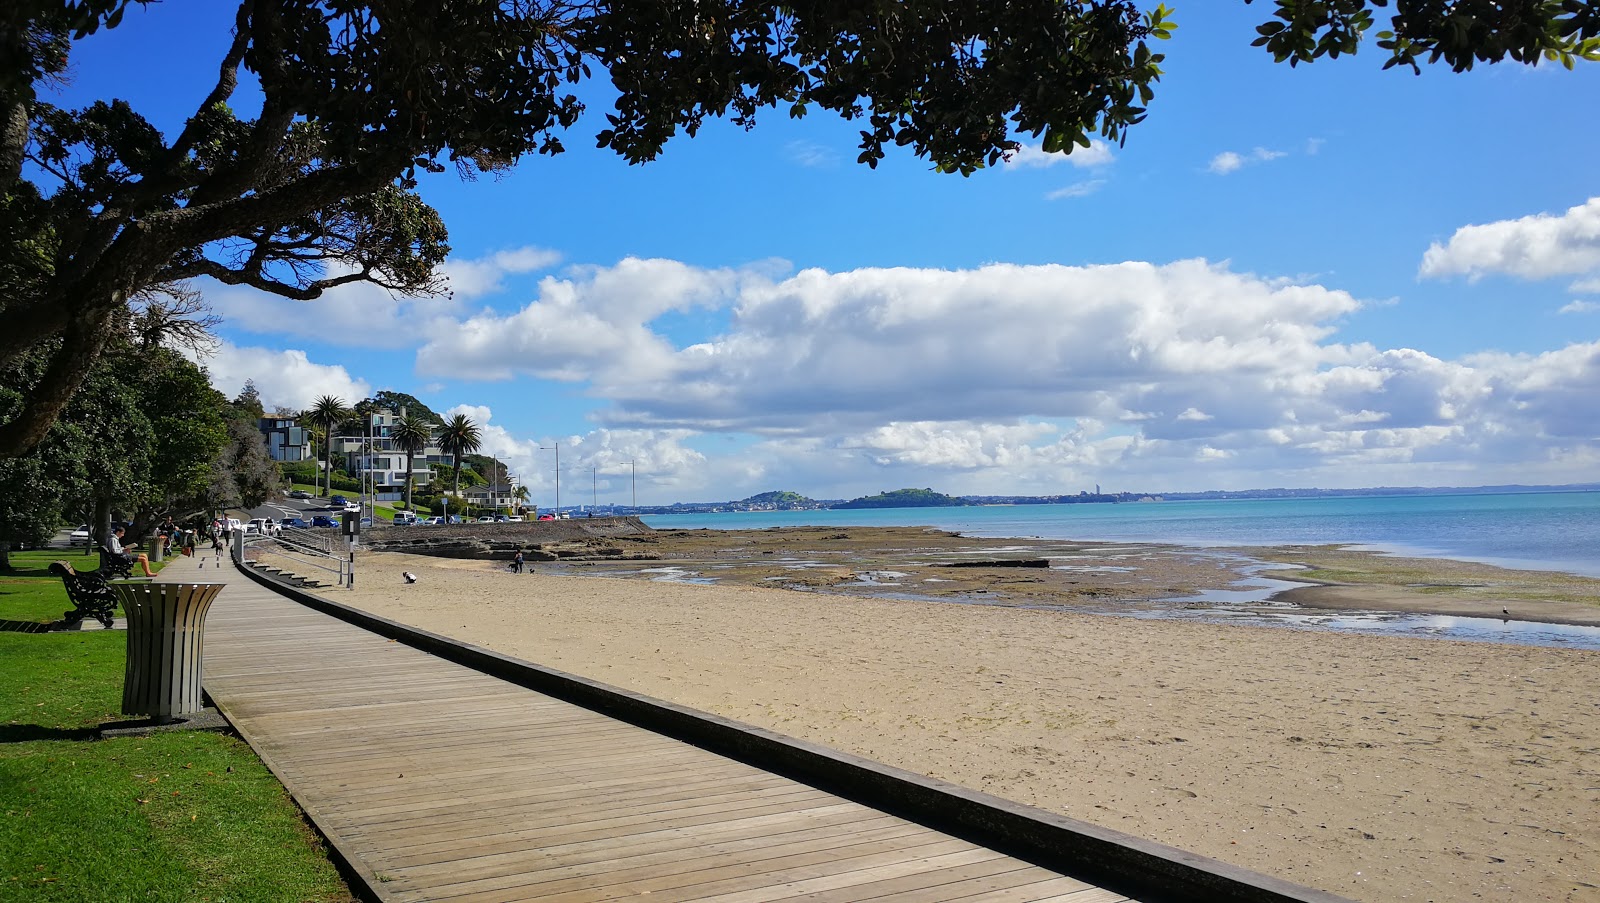 St Heliers Beach'in fotoğrafı - rahatlamayı sevenler arasında popüler bir yer